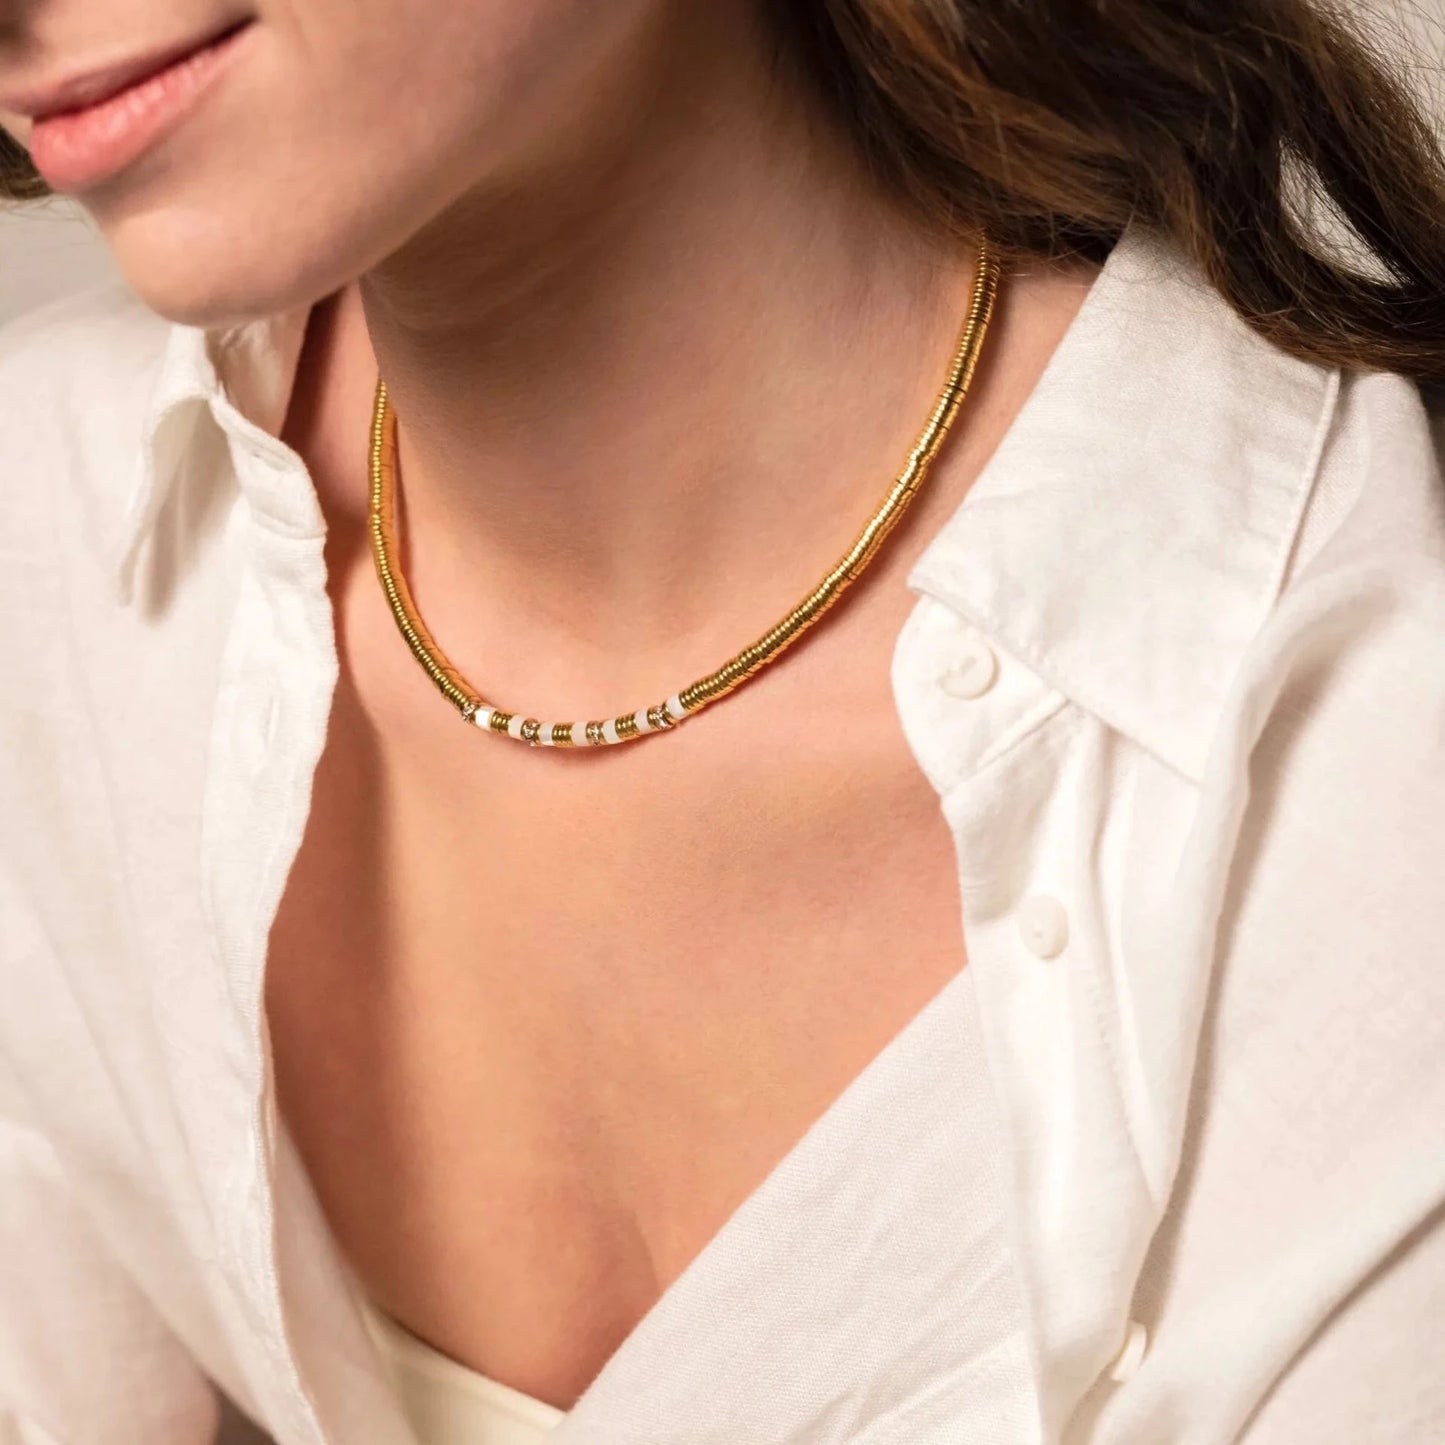 Femme portant un collier rond en or avec petits stass intégrés